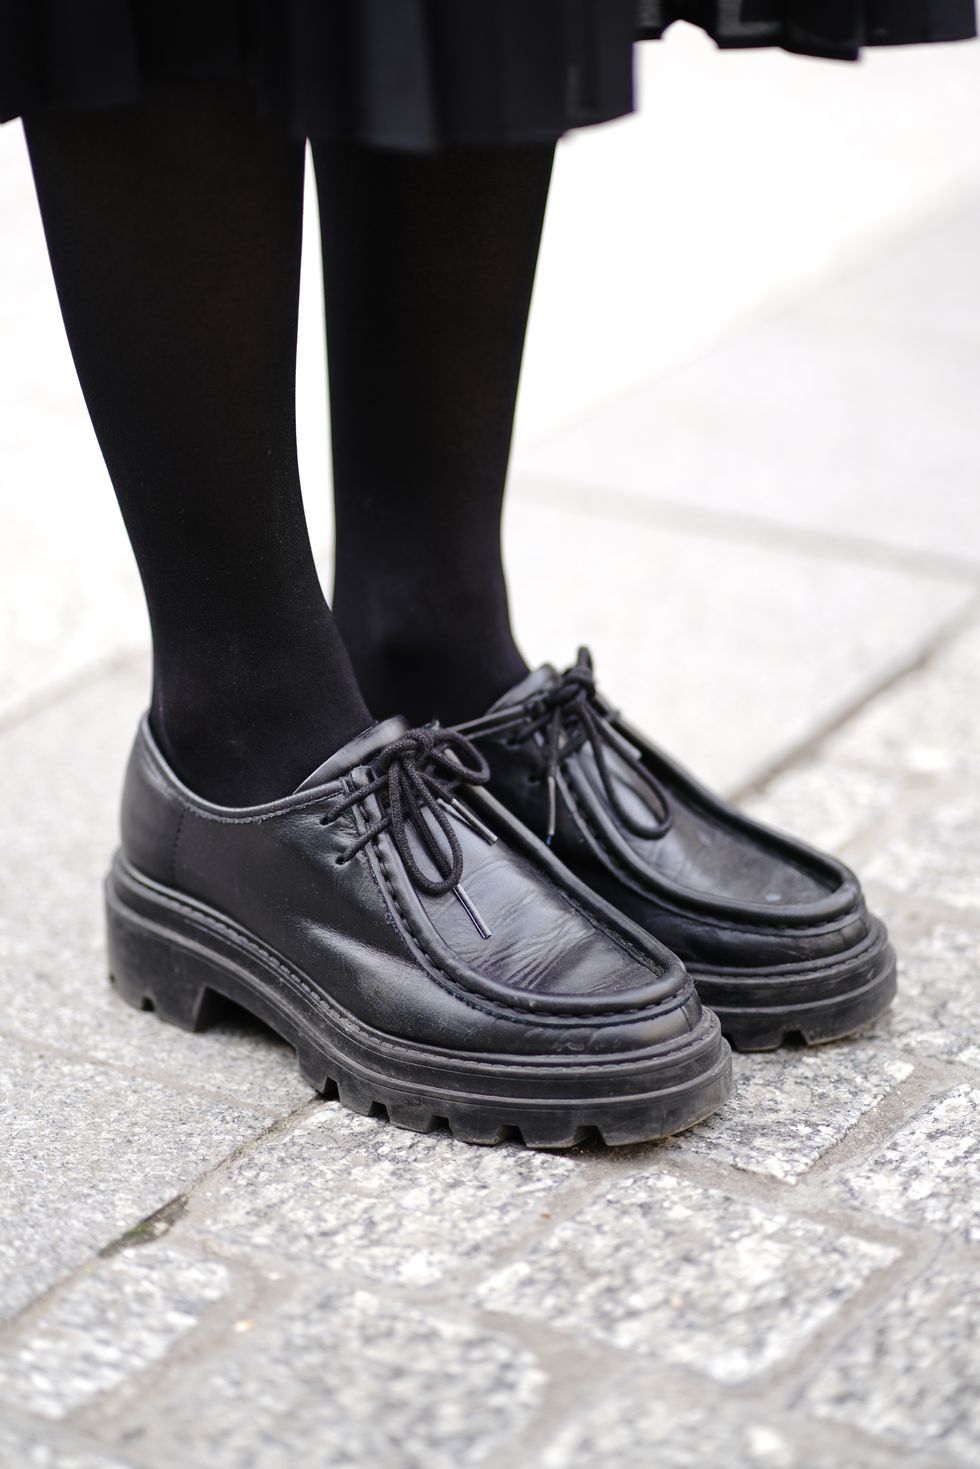 Footwear, White, Shoe, Black, Black-and-white, Leg, Ankle, Human leg, Fashion, Street fashion, 